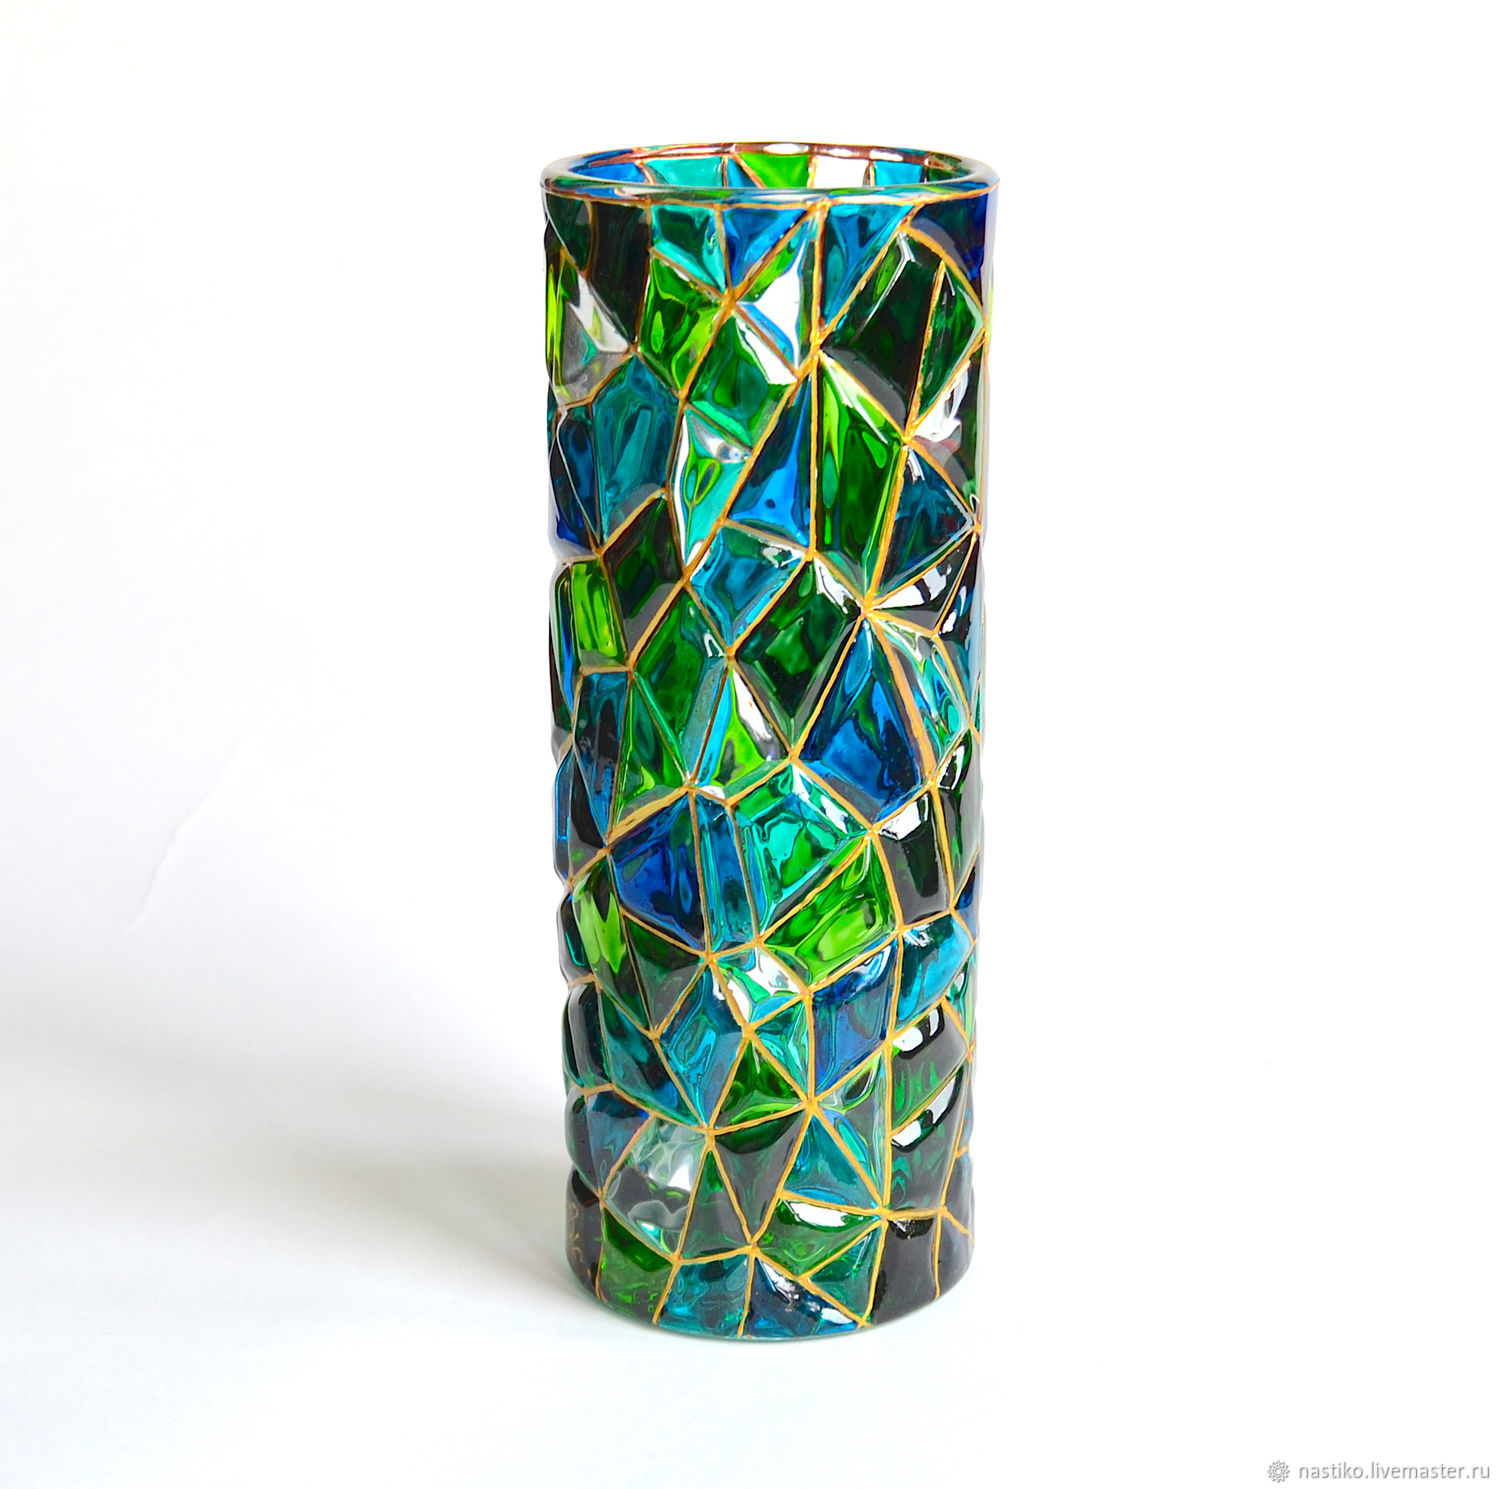 вазы из зеленого стекла для интерьера